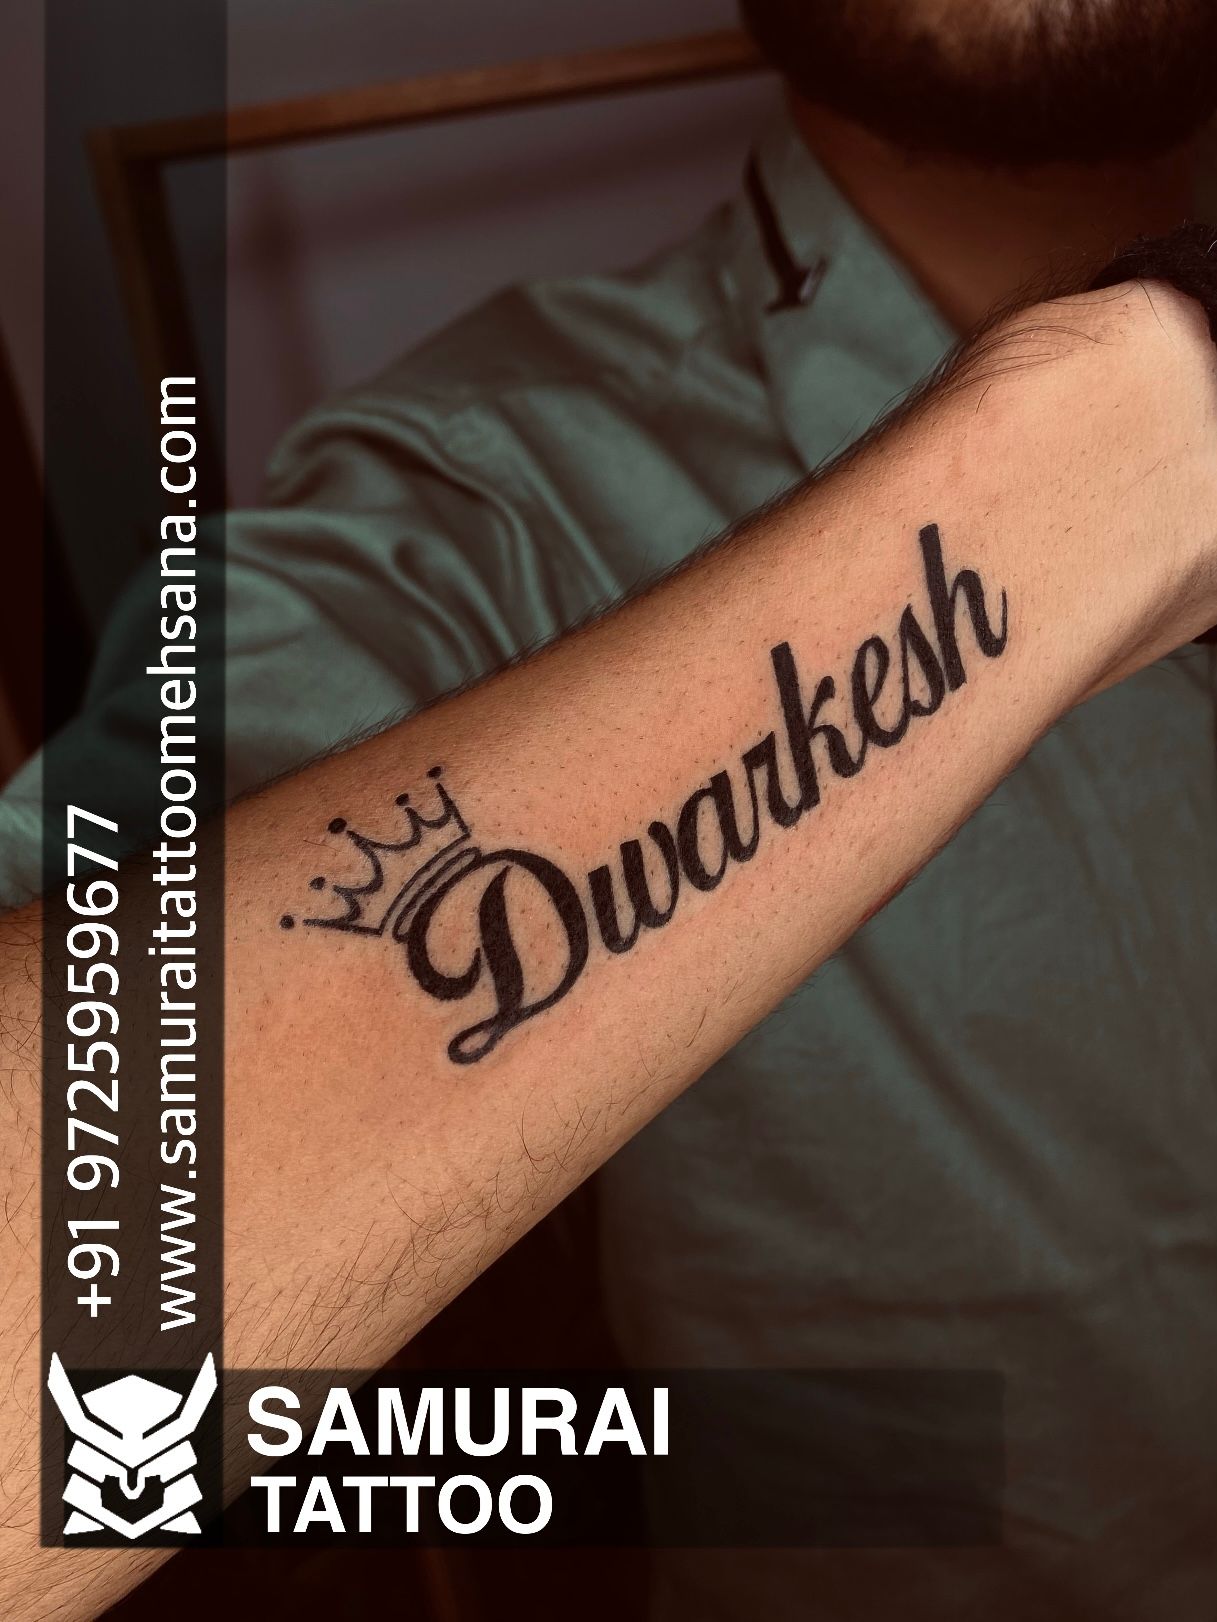 jay Shree Ram only kattar Hindu Dhanush Ban Bow And Arrow Tattoo Design For  Chest / Nesh Tattoo's Baramati. #dhanushban #bow #arrow #bowandarrow #tattoo  #neshtattoos #baramati #tattooformen #jayshreeram #hindu #sanatandharma  #kshatriya #tattoolovers #